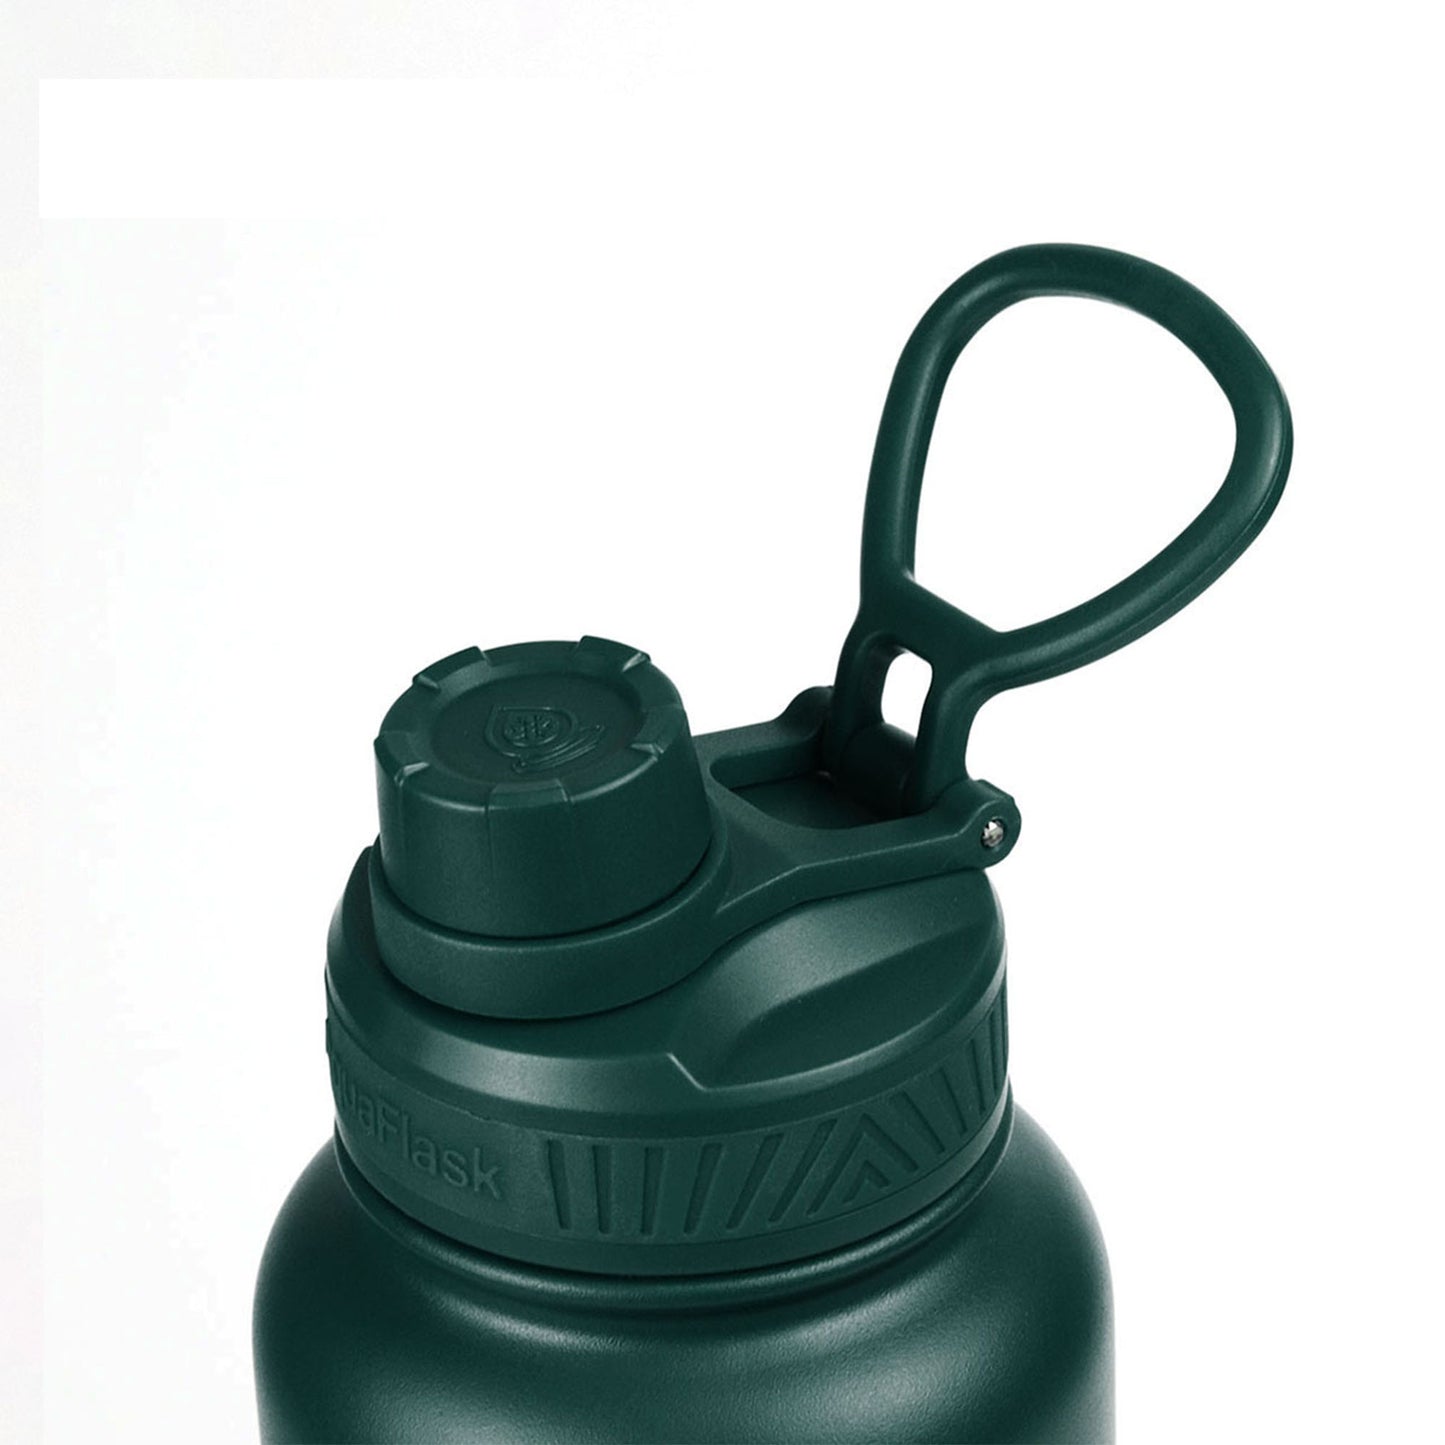 Aquaflask Original Vacuum Insulated Water Bottles 1180ml (40oz)